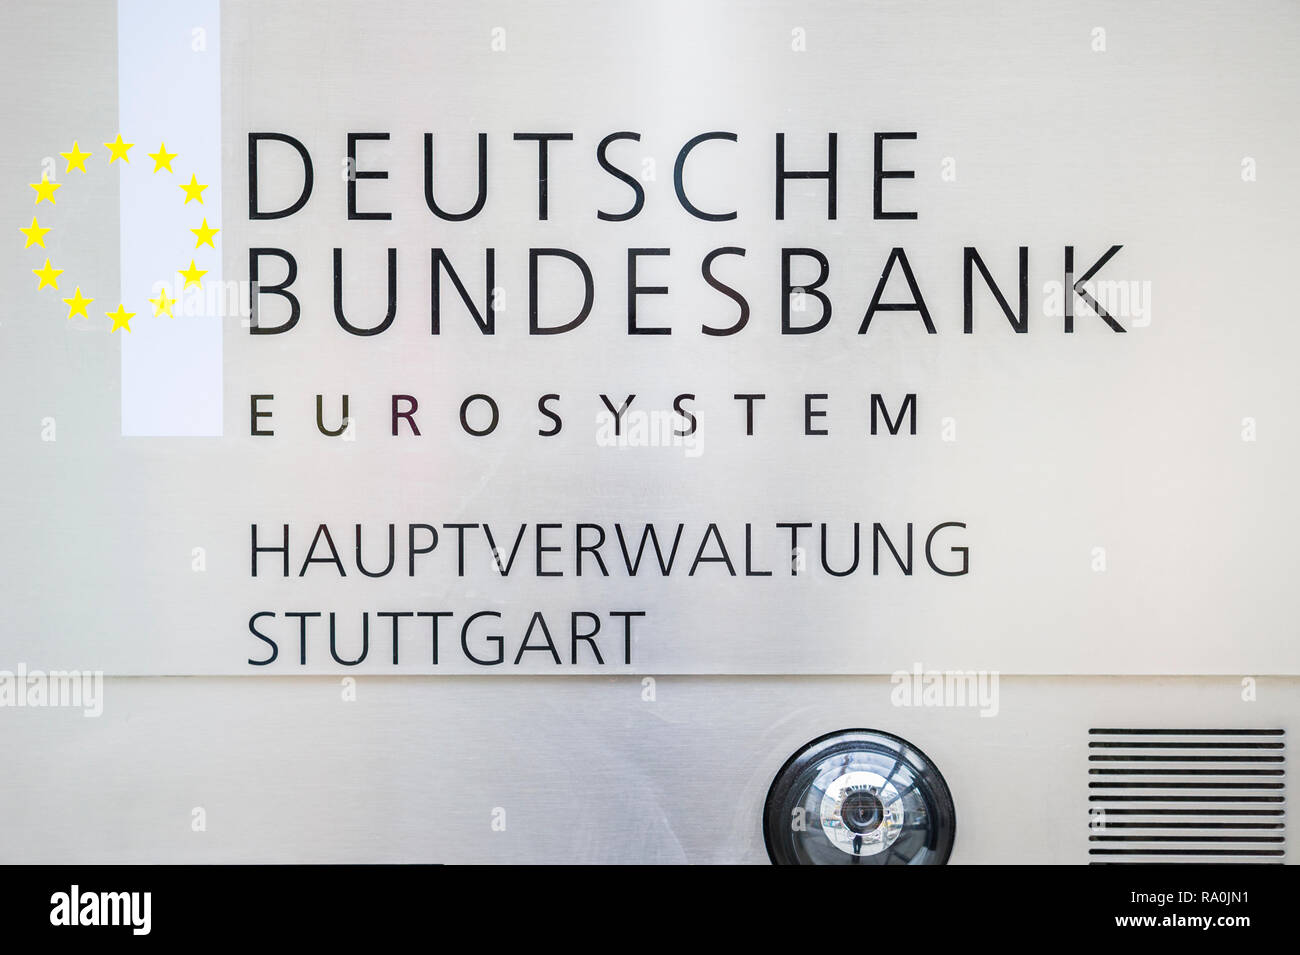 German bundesbank -Fotos und -Bildmaterial in hoher Auflösung – Alamy